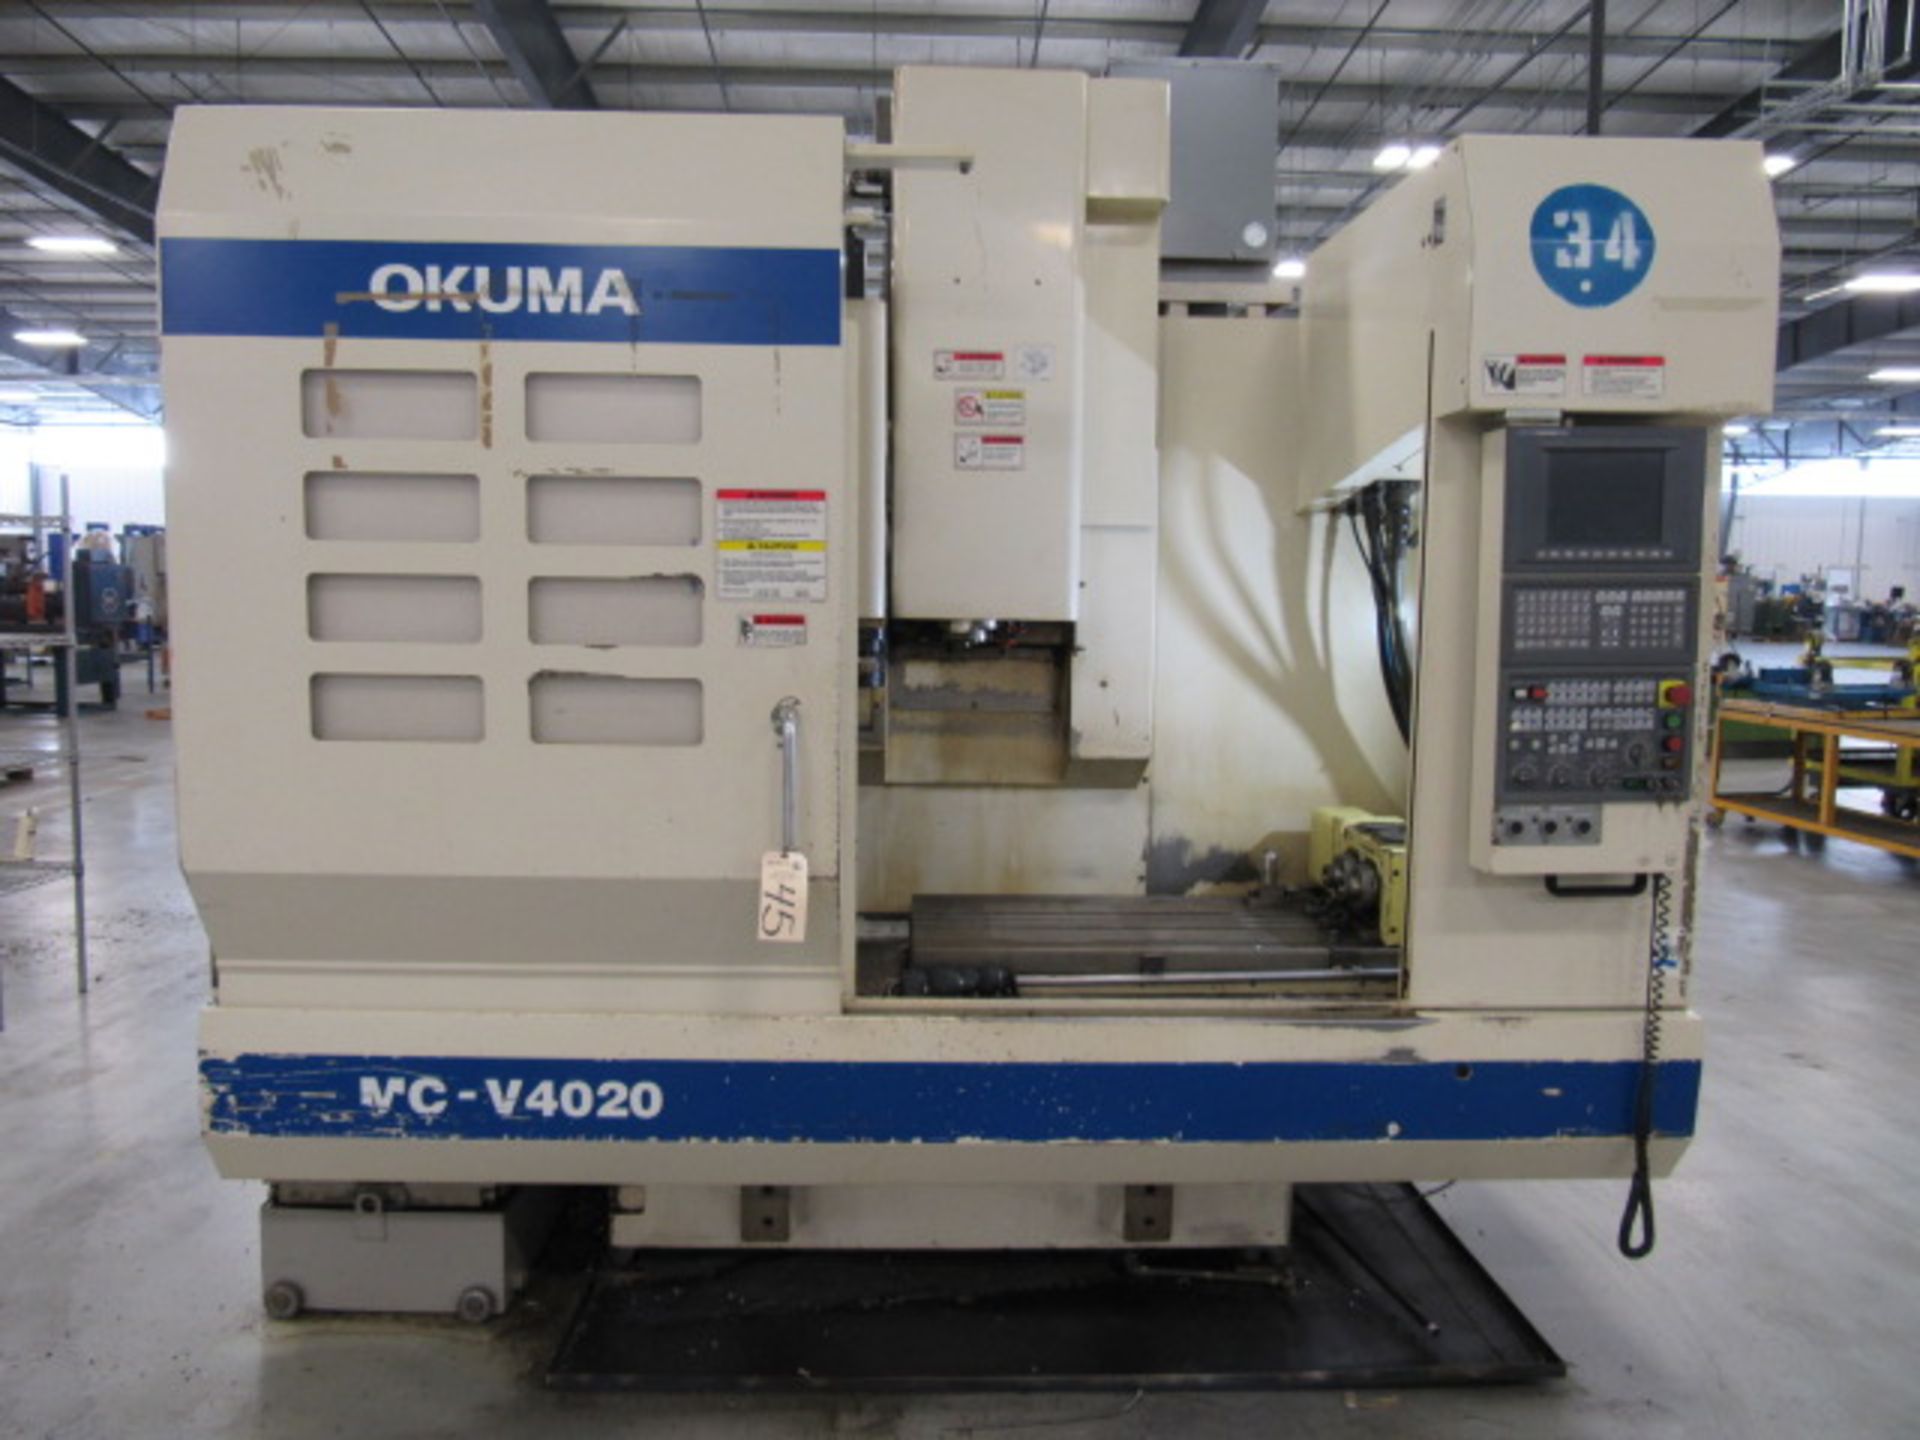 Okuma MC-V4020 CNC Vertical Machining Center - Image 3 of 5